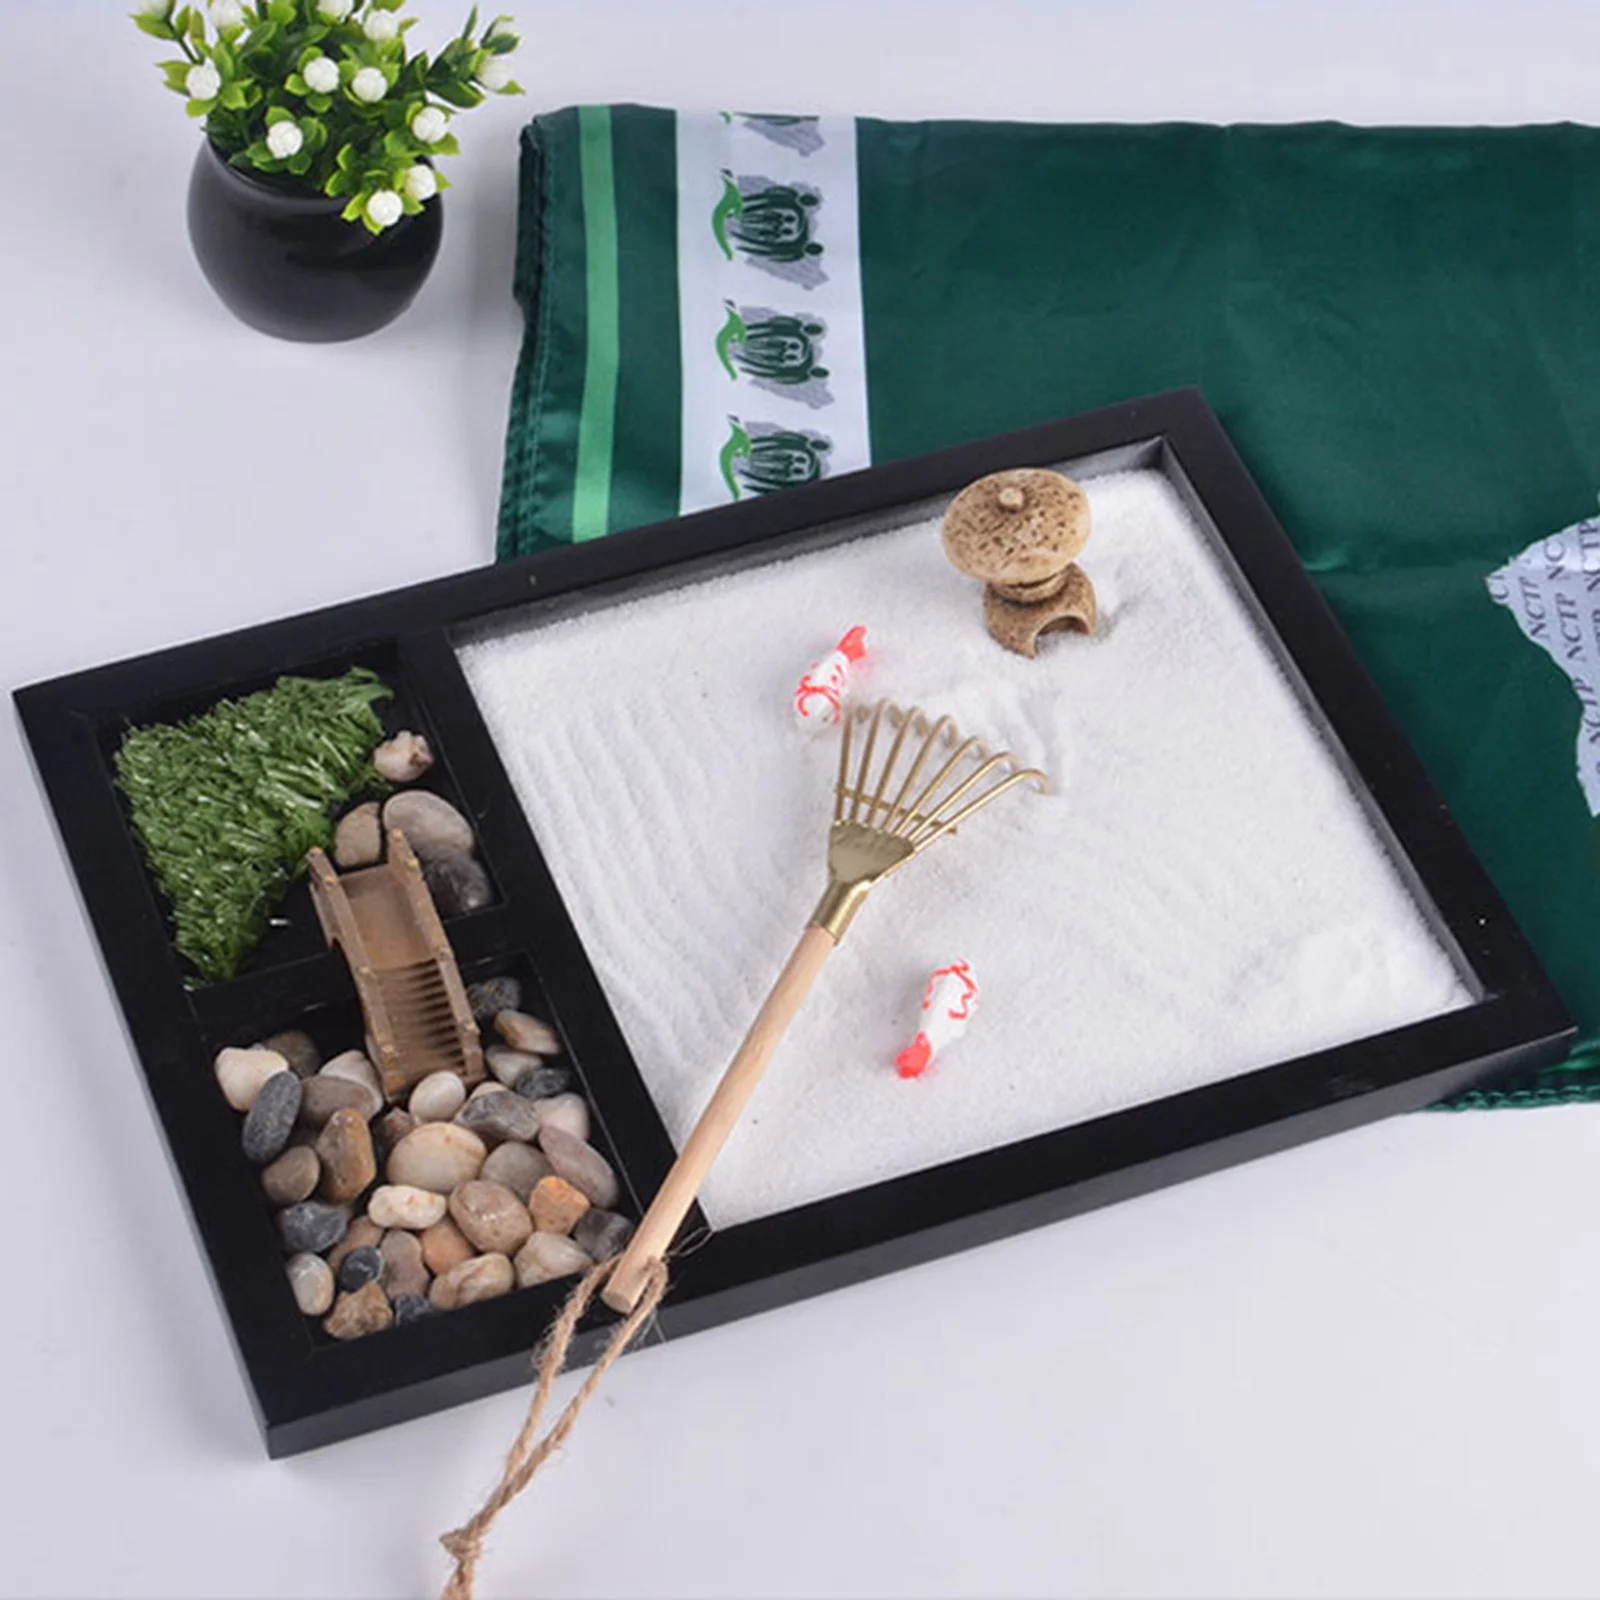 Japanese Zen Garden Kit for Desk Office Table Mini Zen Sand Garden Kit for Meditation Create Unique Calming Zen Garden